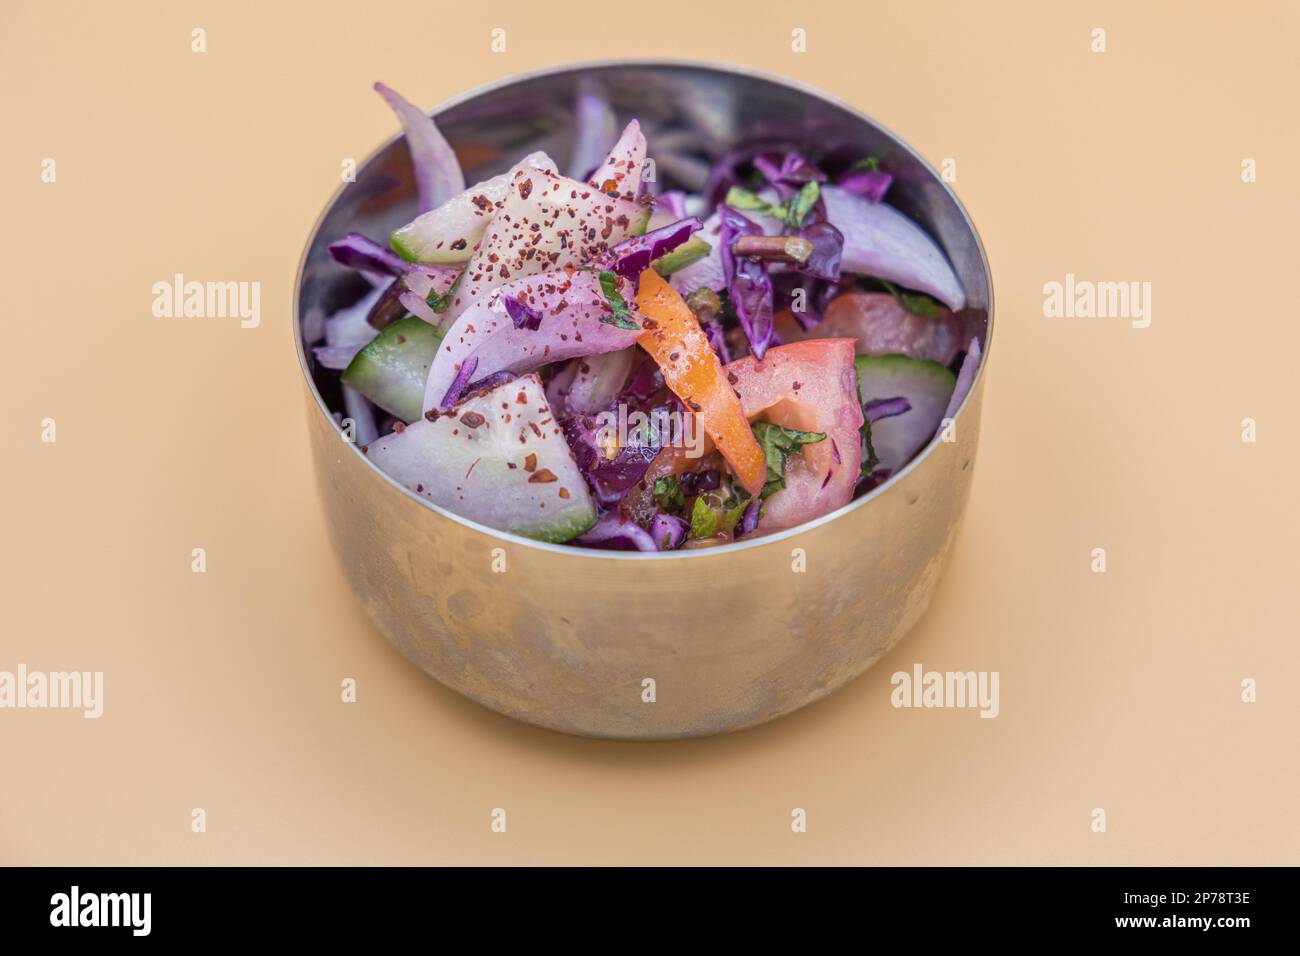 Salat: Traditioneller nahöstlicher Salat, gemischt mit Gurken, Tomaten, Petersilie, Olivenöl und Sumac-Gewürzen. Stockfoto